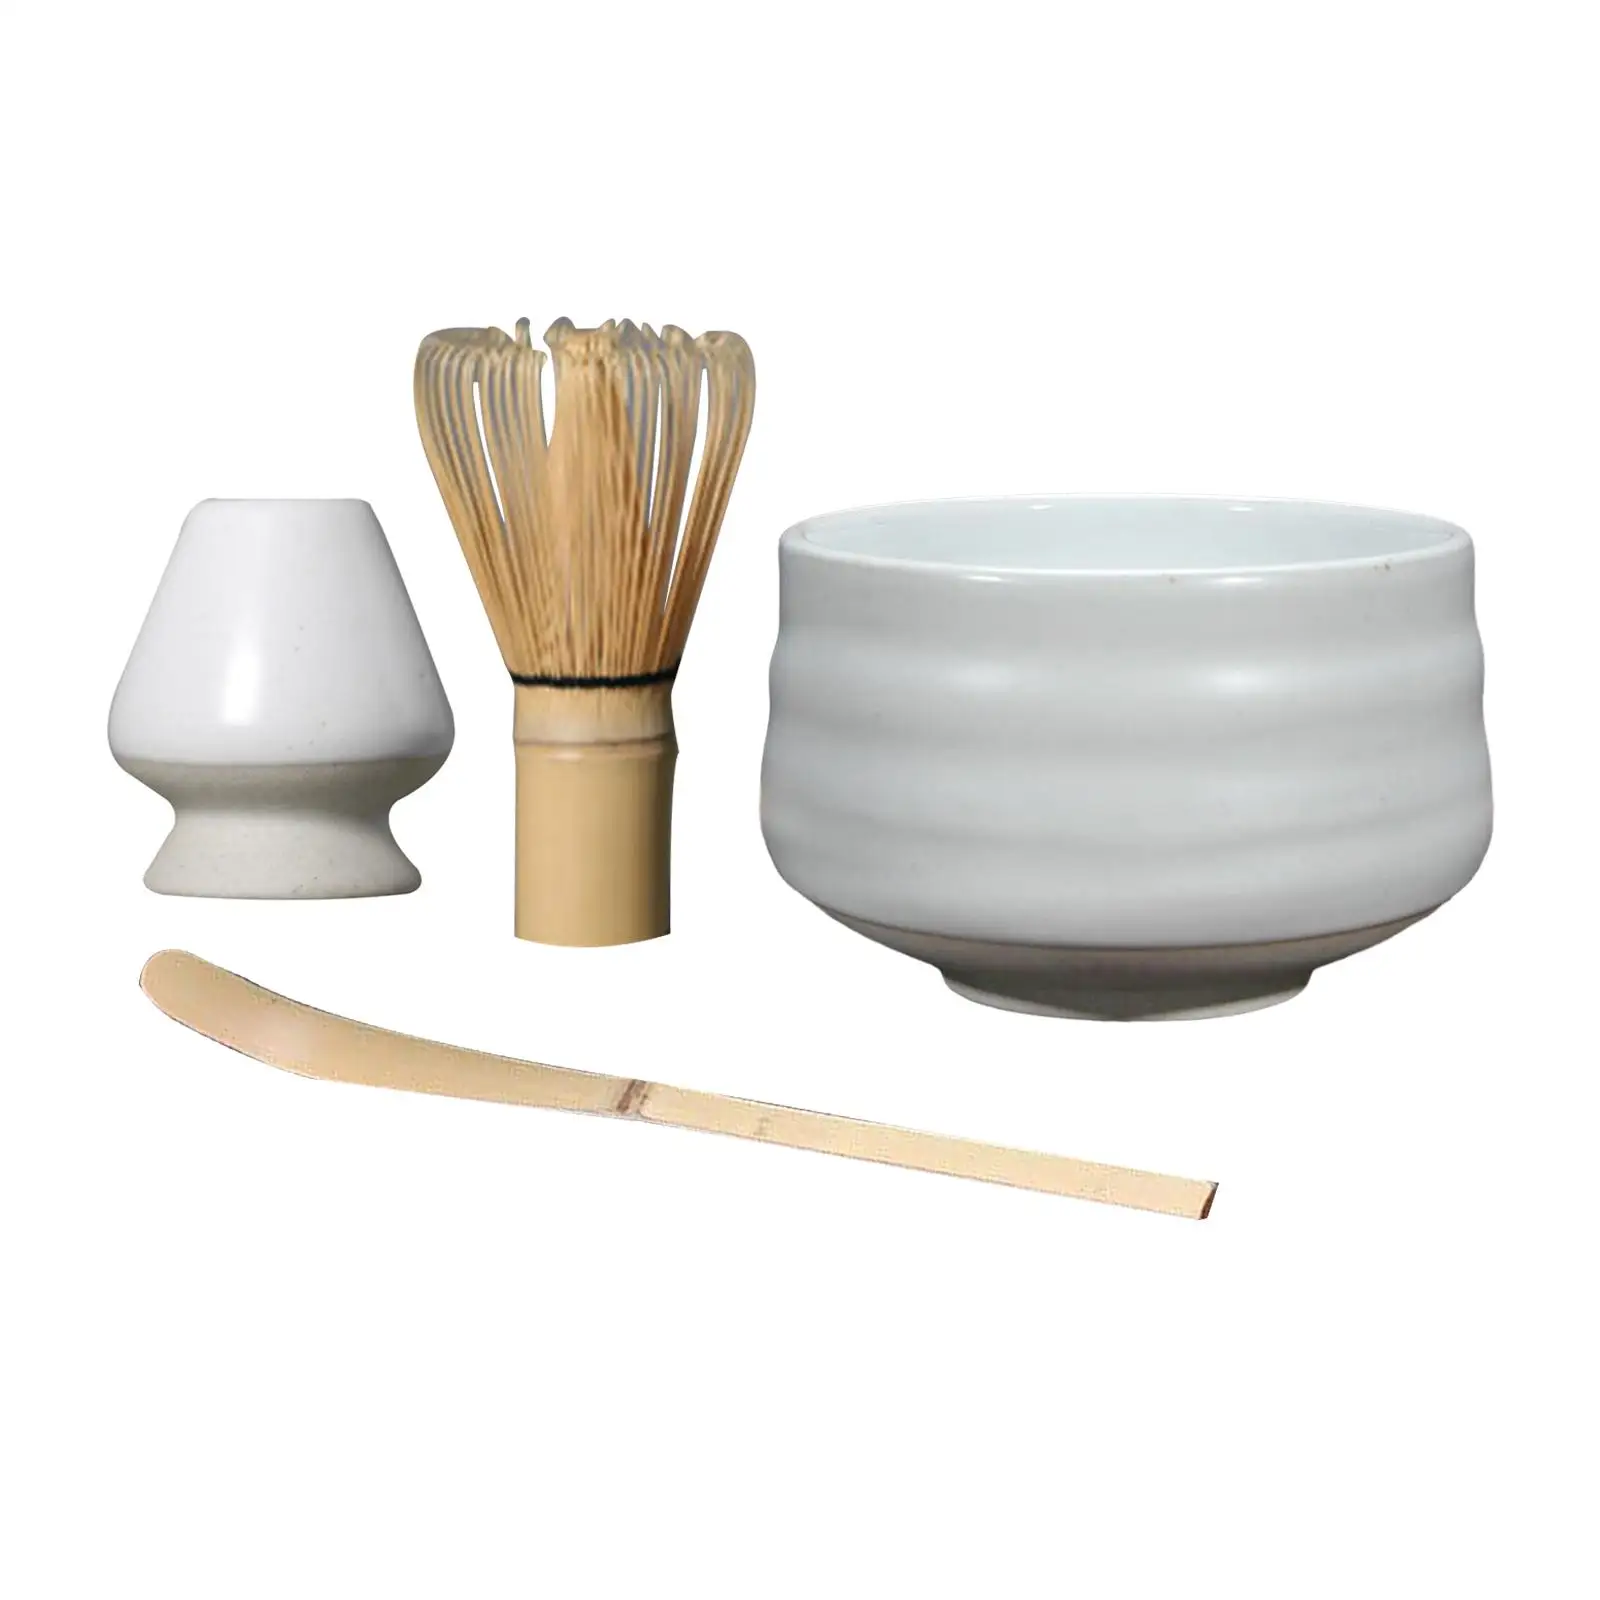 Japanese Style, Matcha Whisk Holder, for Tea Room Ceramics Matcha Whisk Holder, Matcha Scoop, Matcha Chasen Whisk Stand,